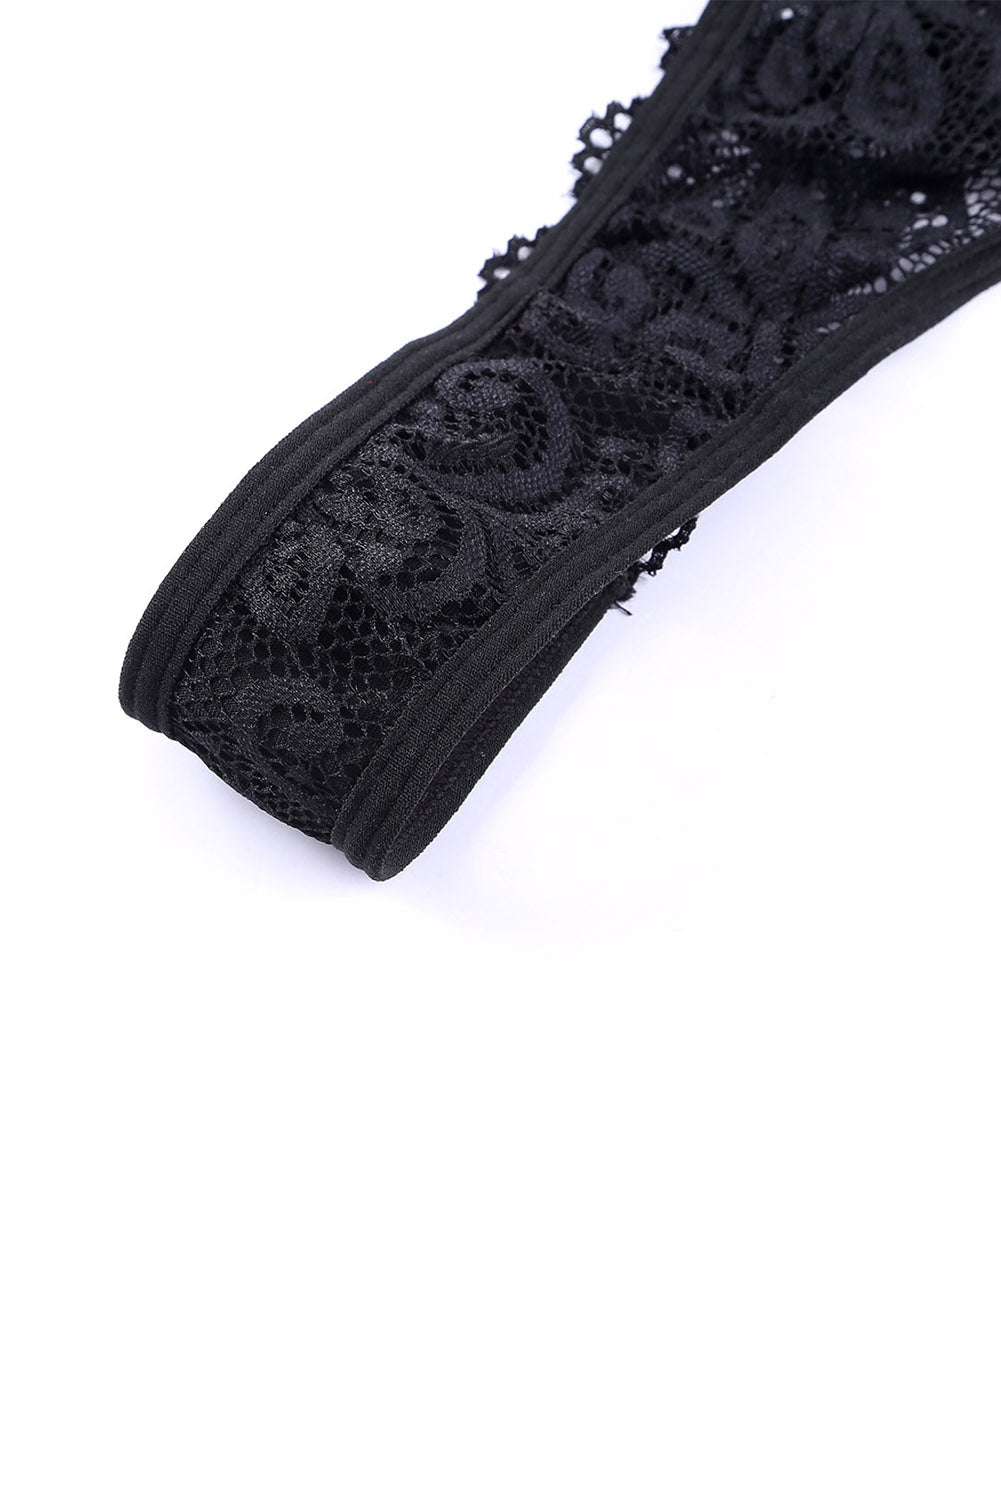 Black Color Block Lace Lingerie Set with Garter Belt